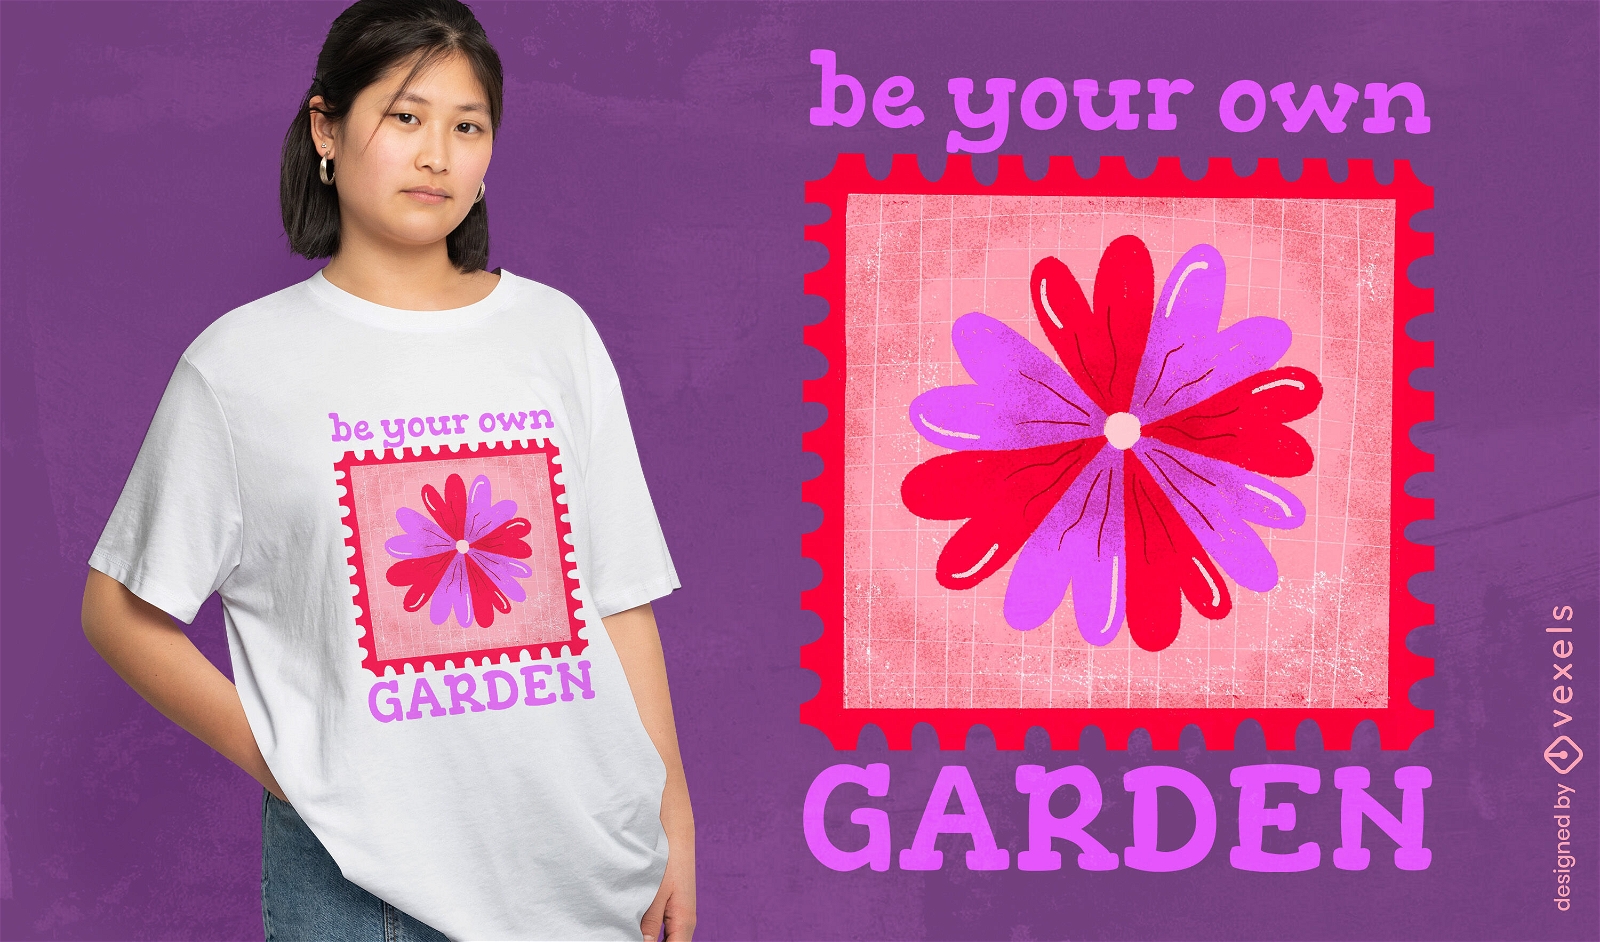 Be your own garden t-shirt design